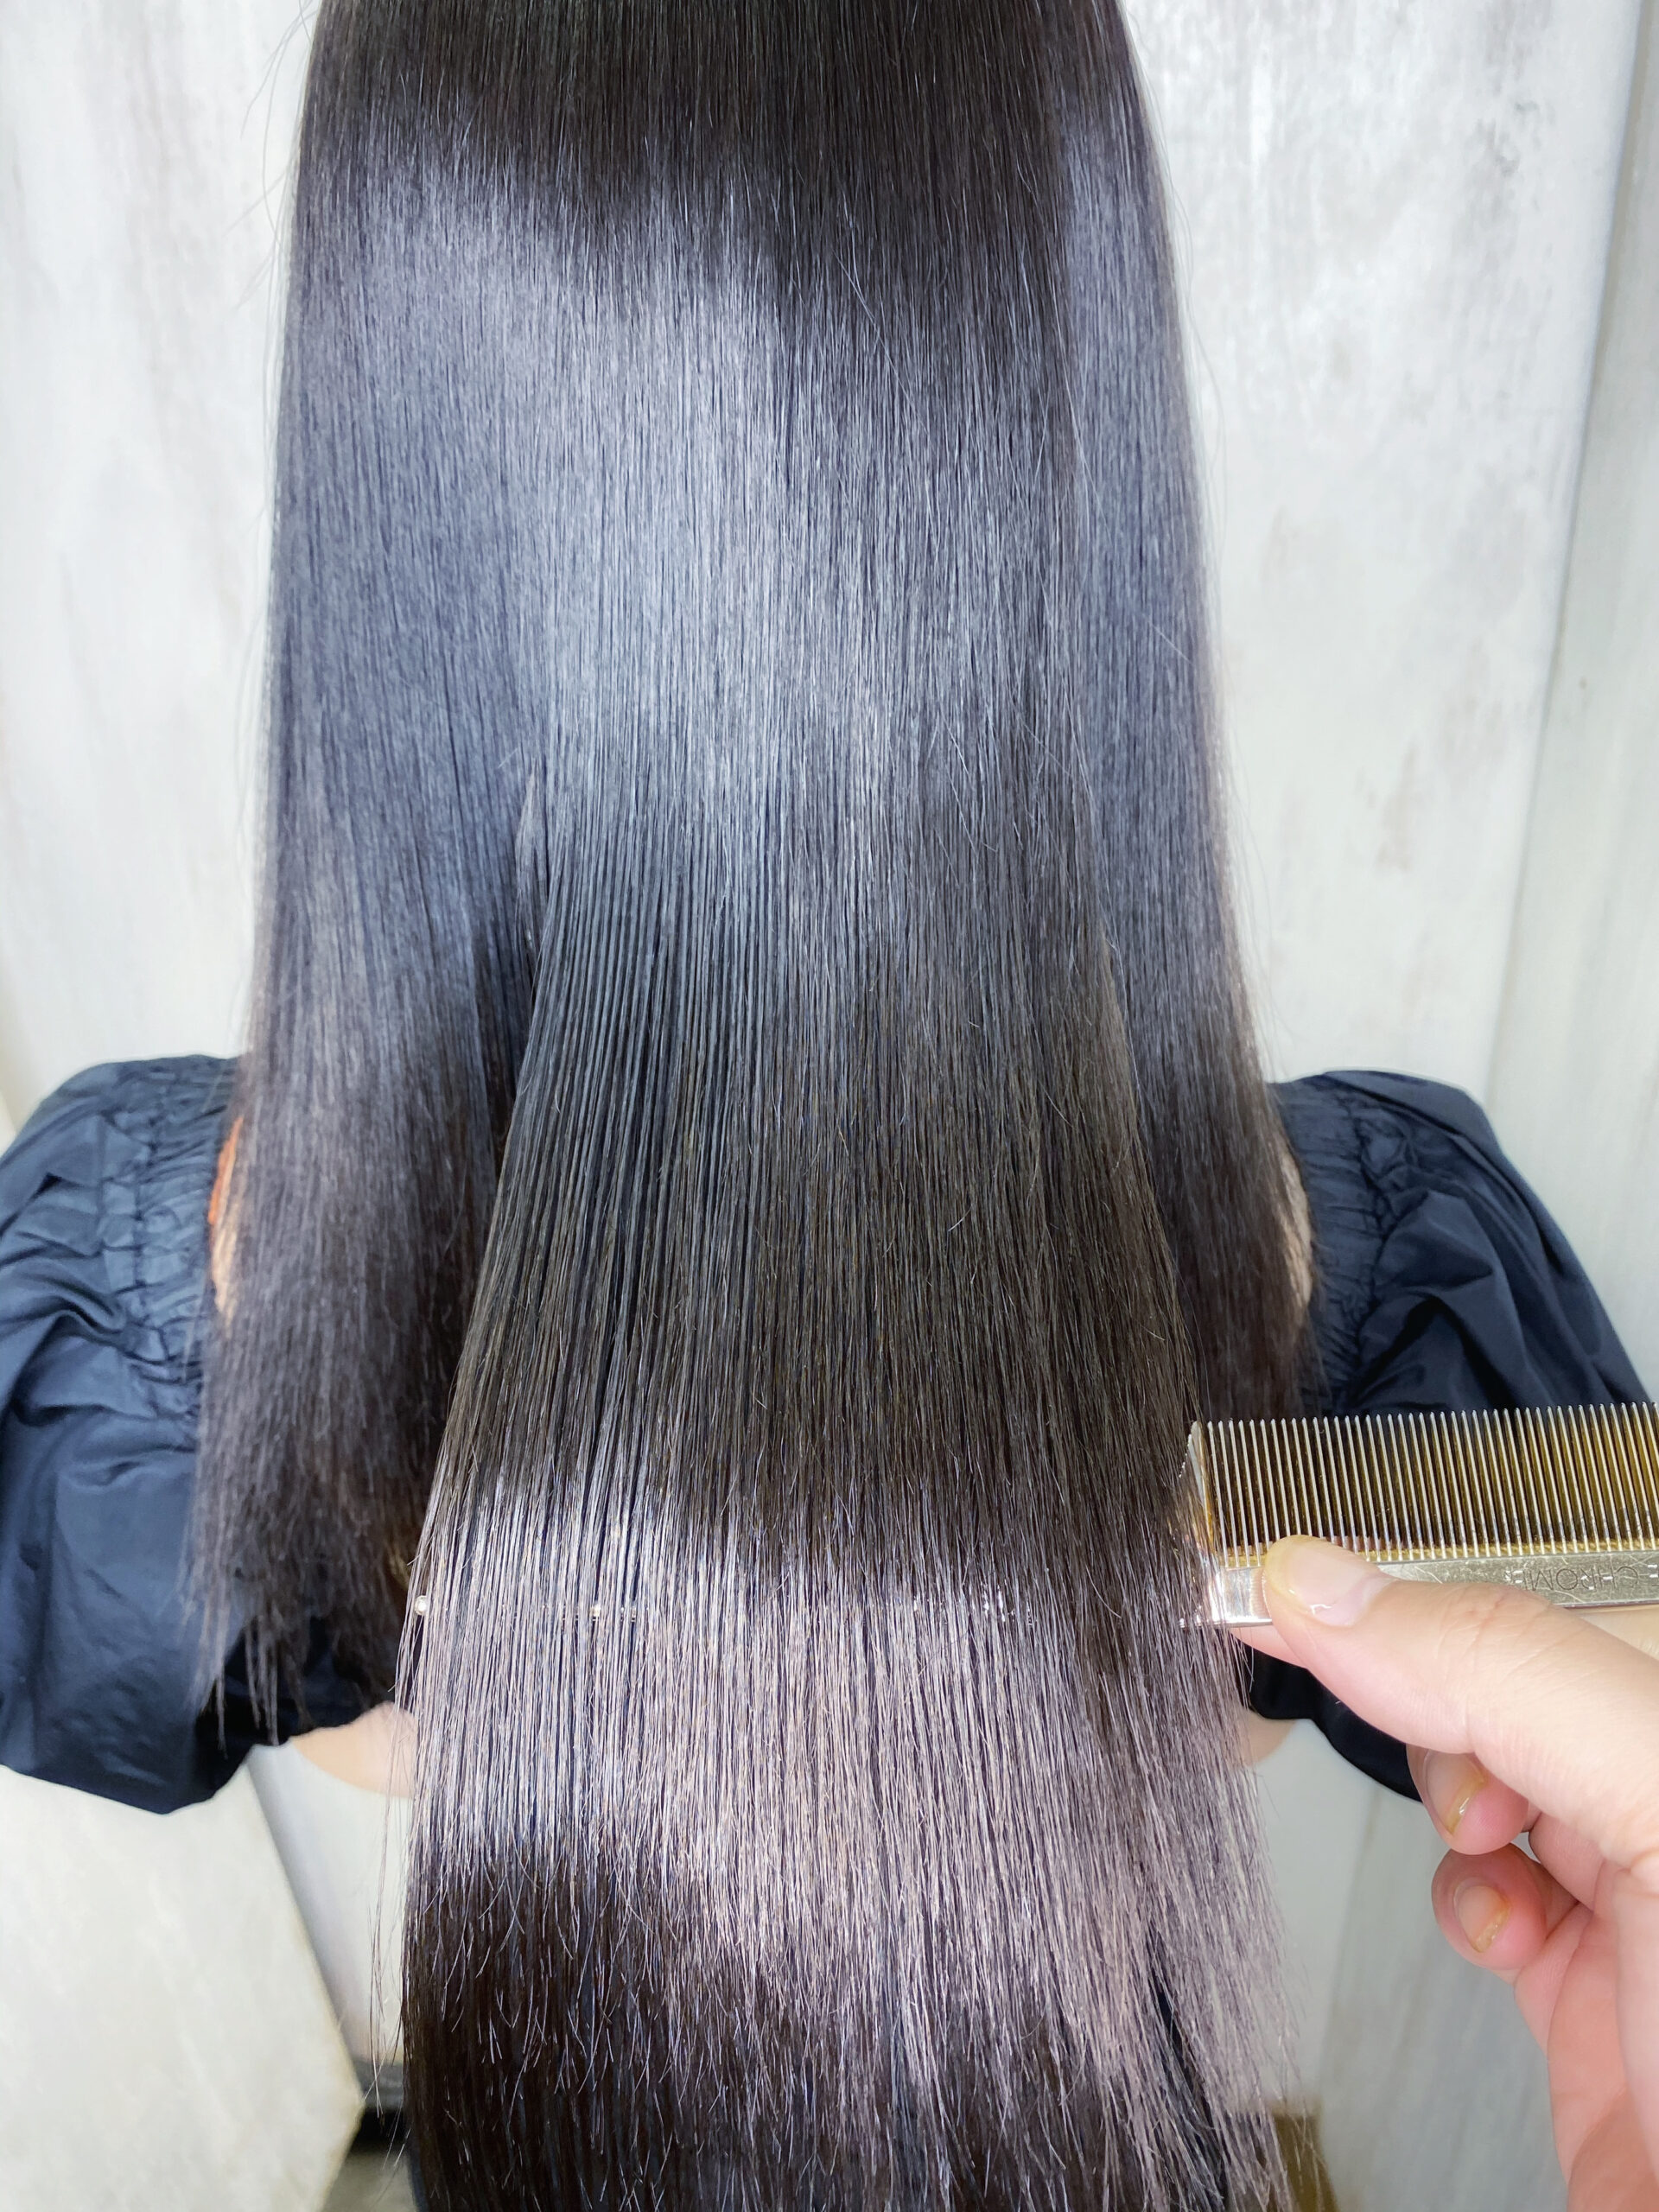 パーマ毛をジュエリーシステム×LULUトリートメント×縮毛矯正でつやっつやの艶髪ストレートヘア。